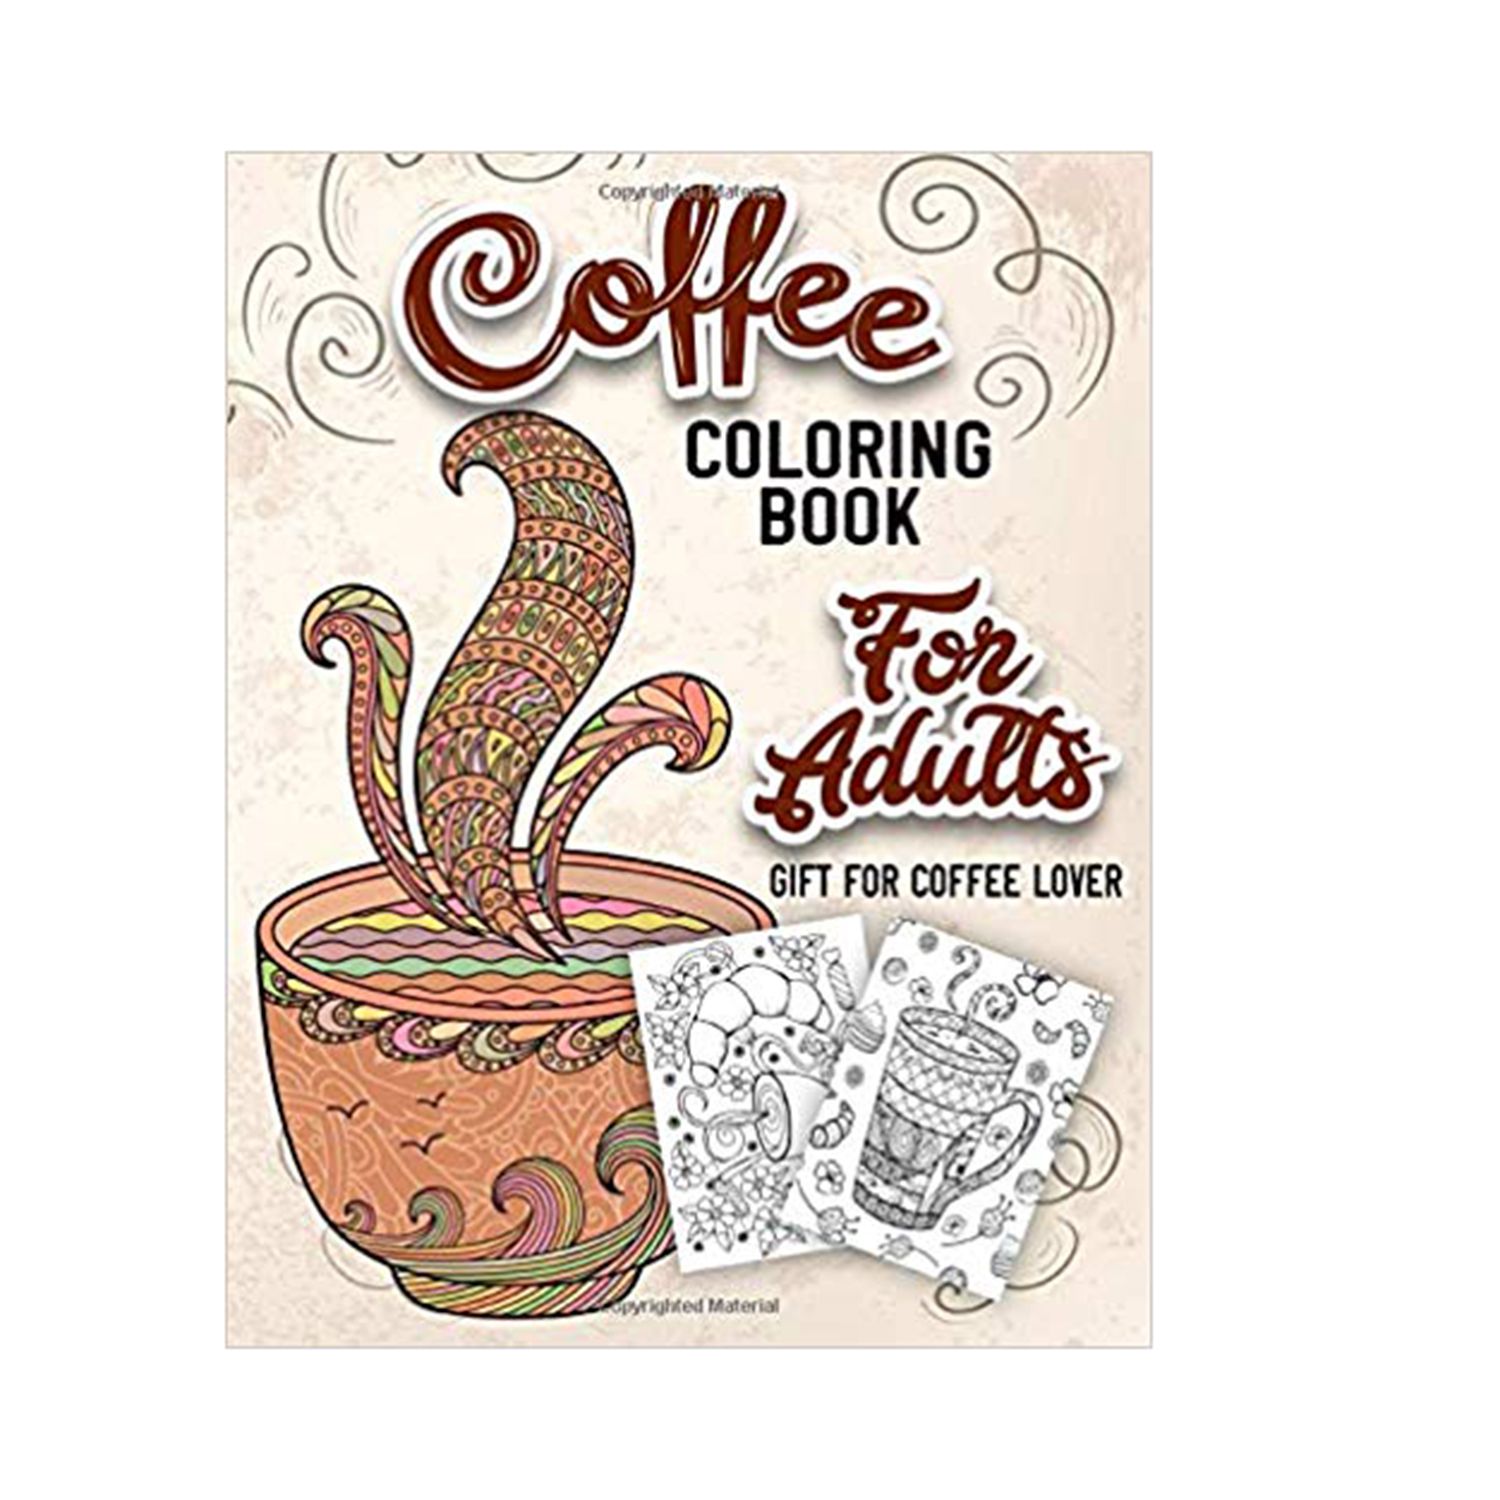 Սուրճի գունազարդման գիրք մեծահասակների համար. Մեծահասակների գունազարդման գիրք